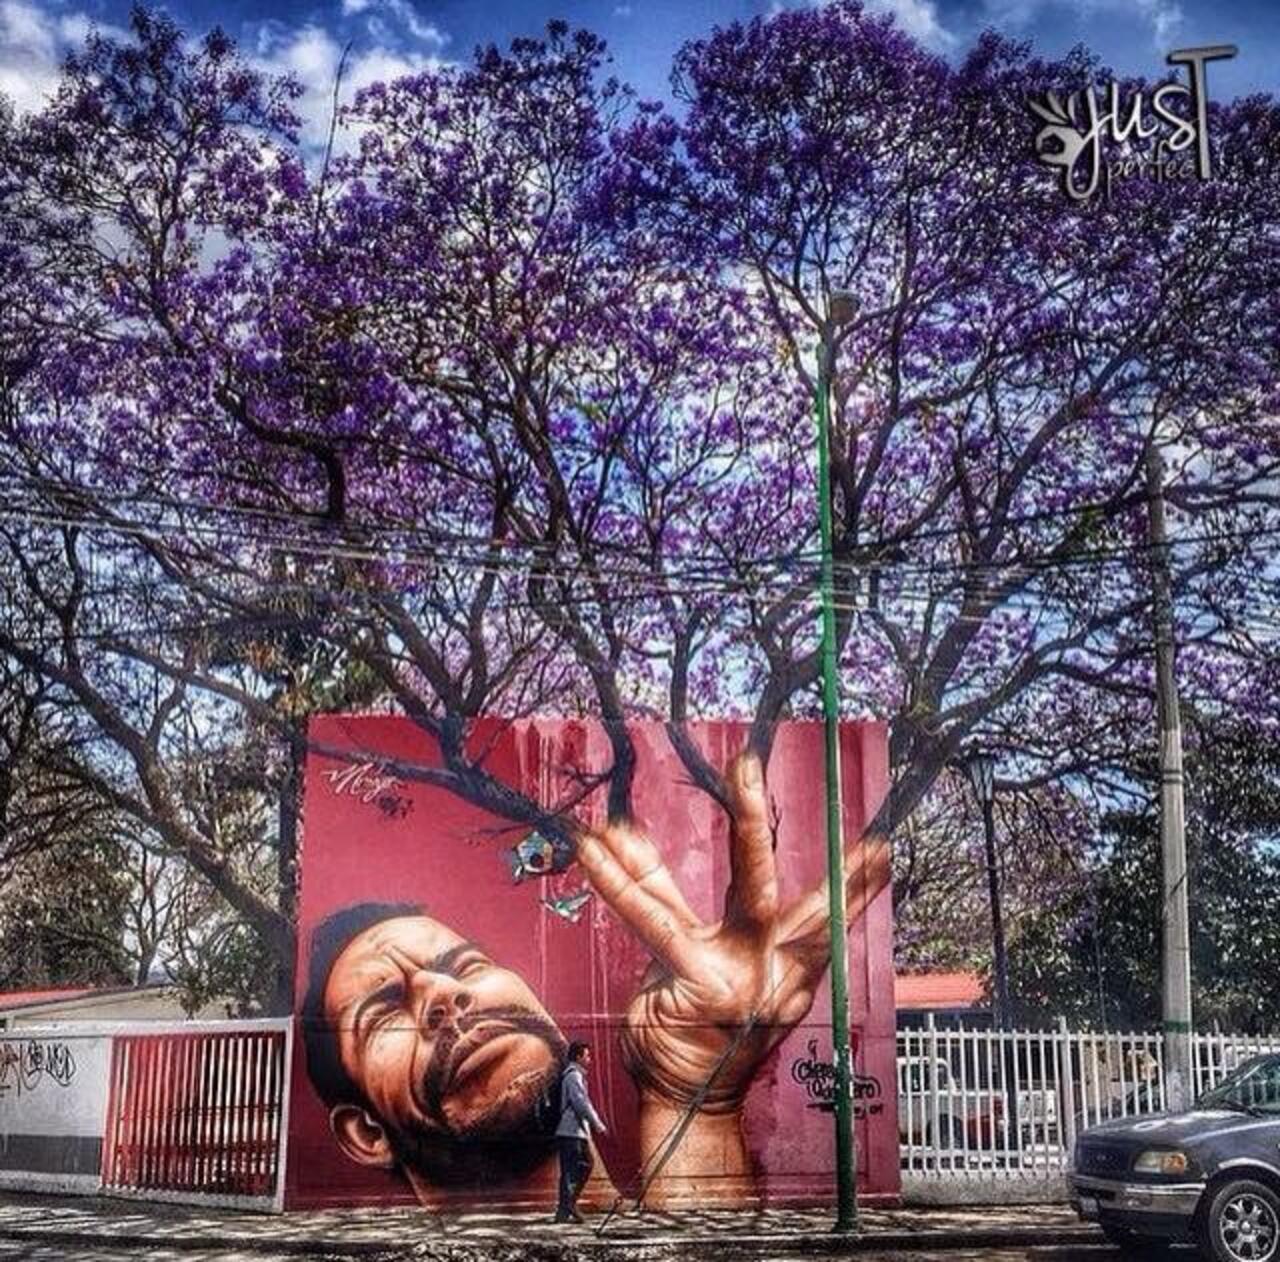 "@GoogleStreetArt: When Street Art meets nature
Work by Jose Luis Noriega
#art #arte #graffiti #streetart http://t.co/Q7vUr1nyI6"